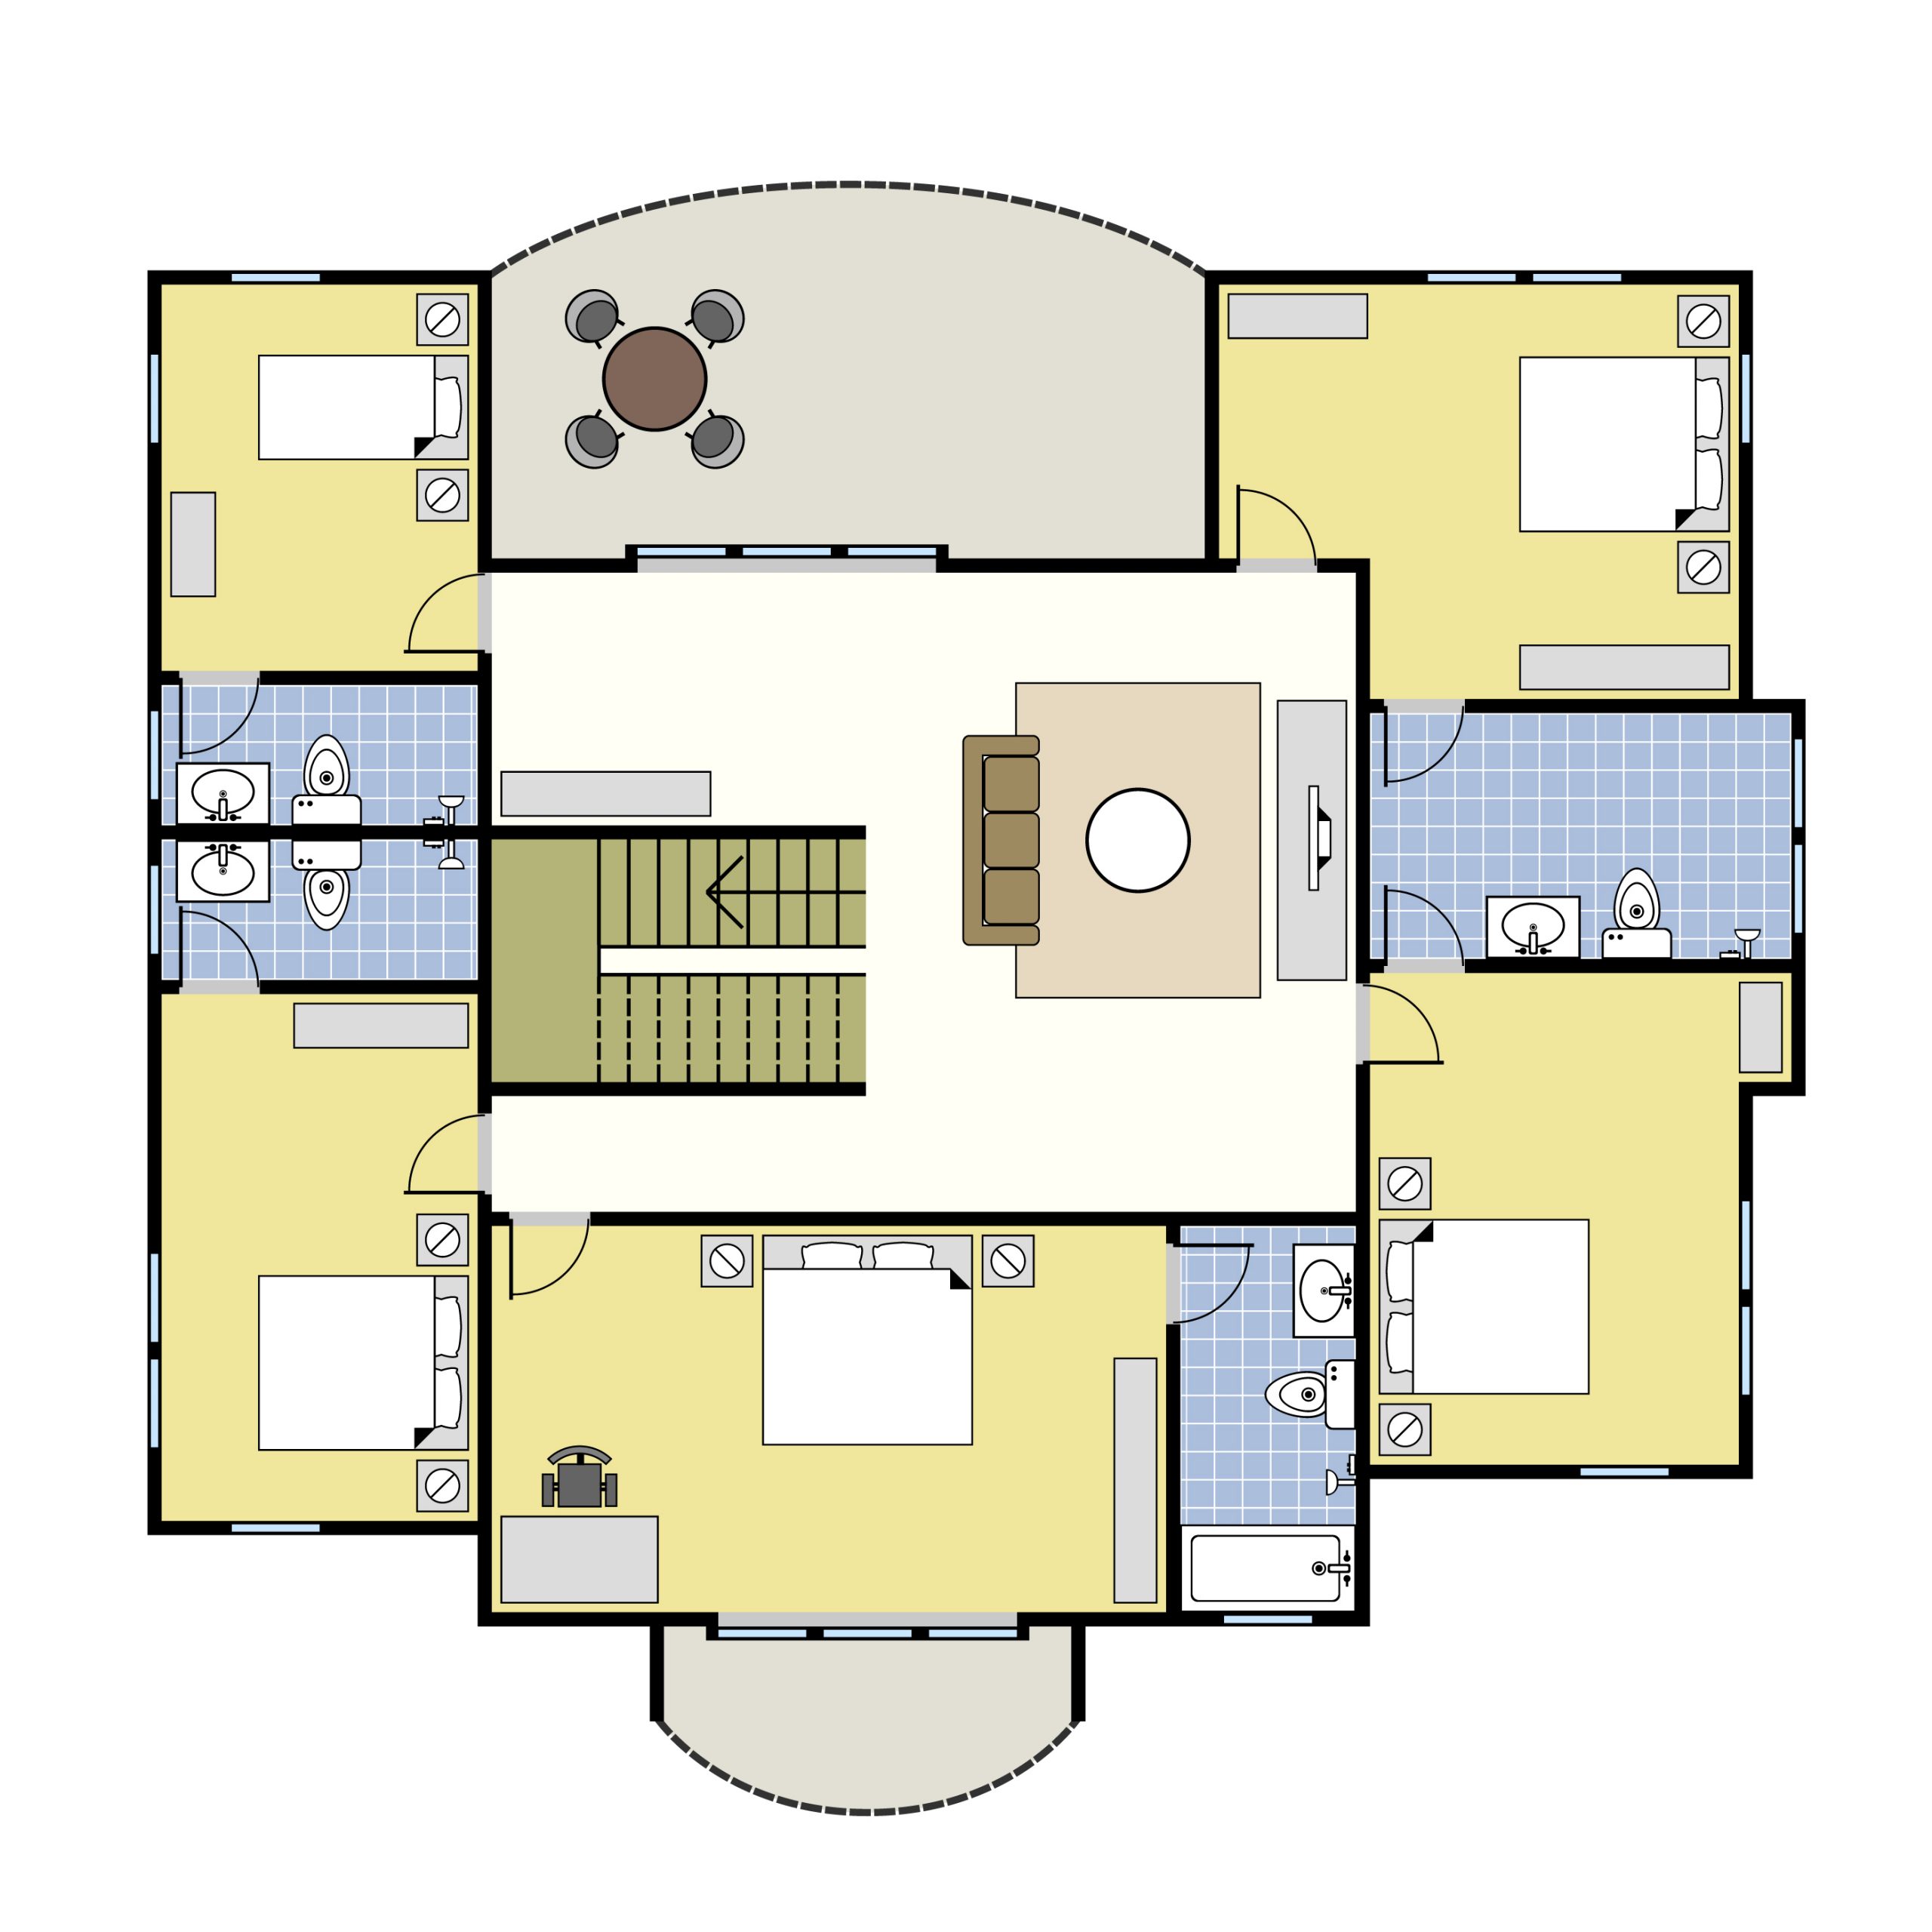 4 BHK master bedroom floor plan with Balcony